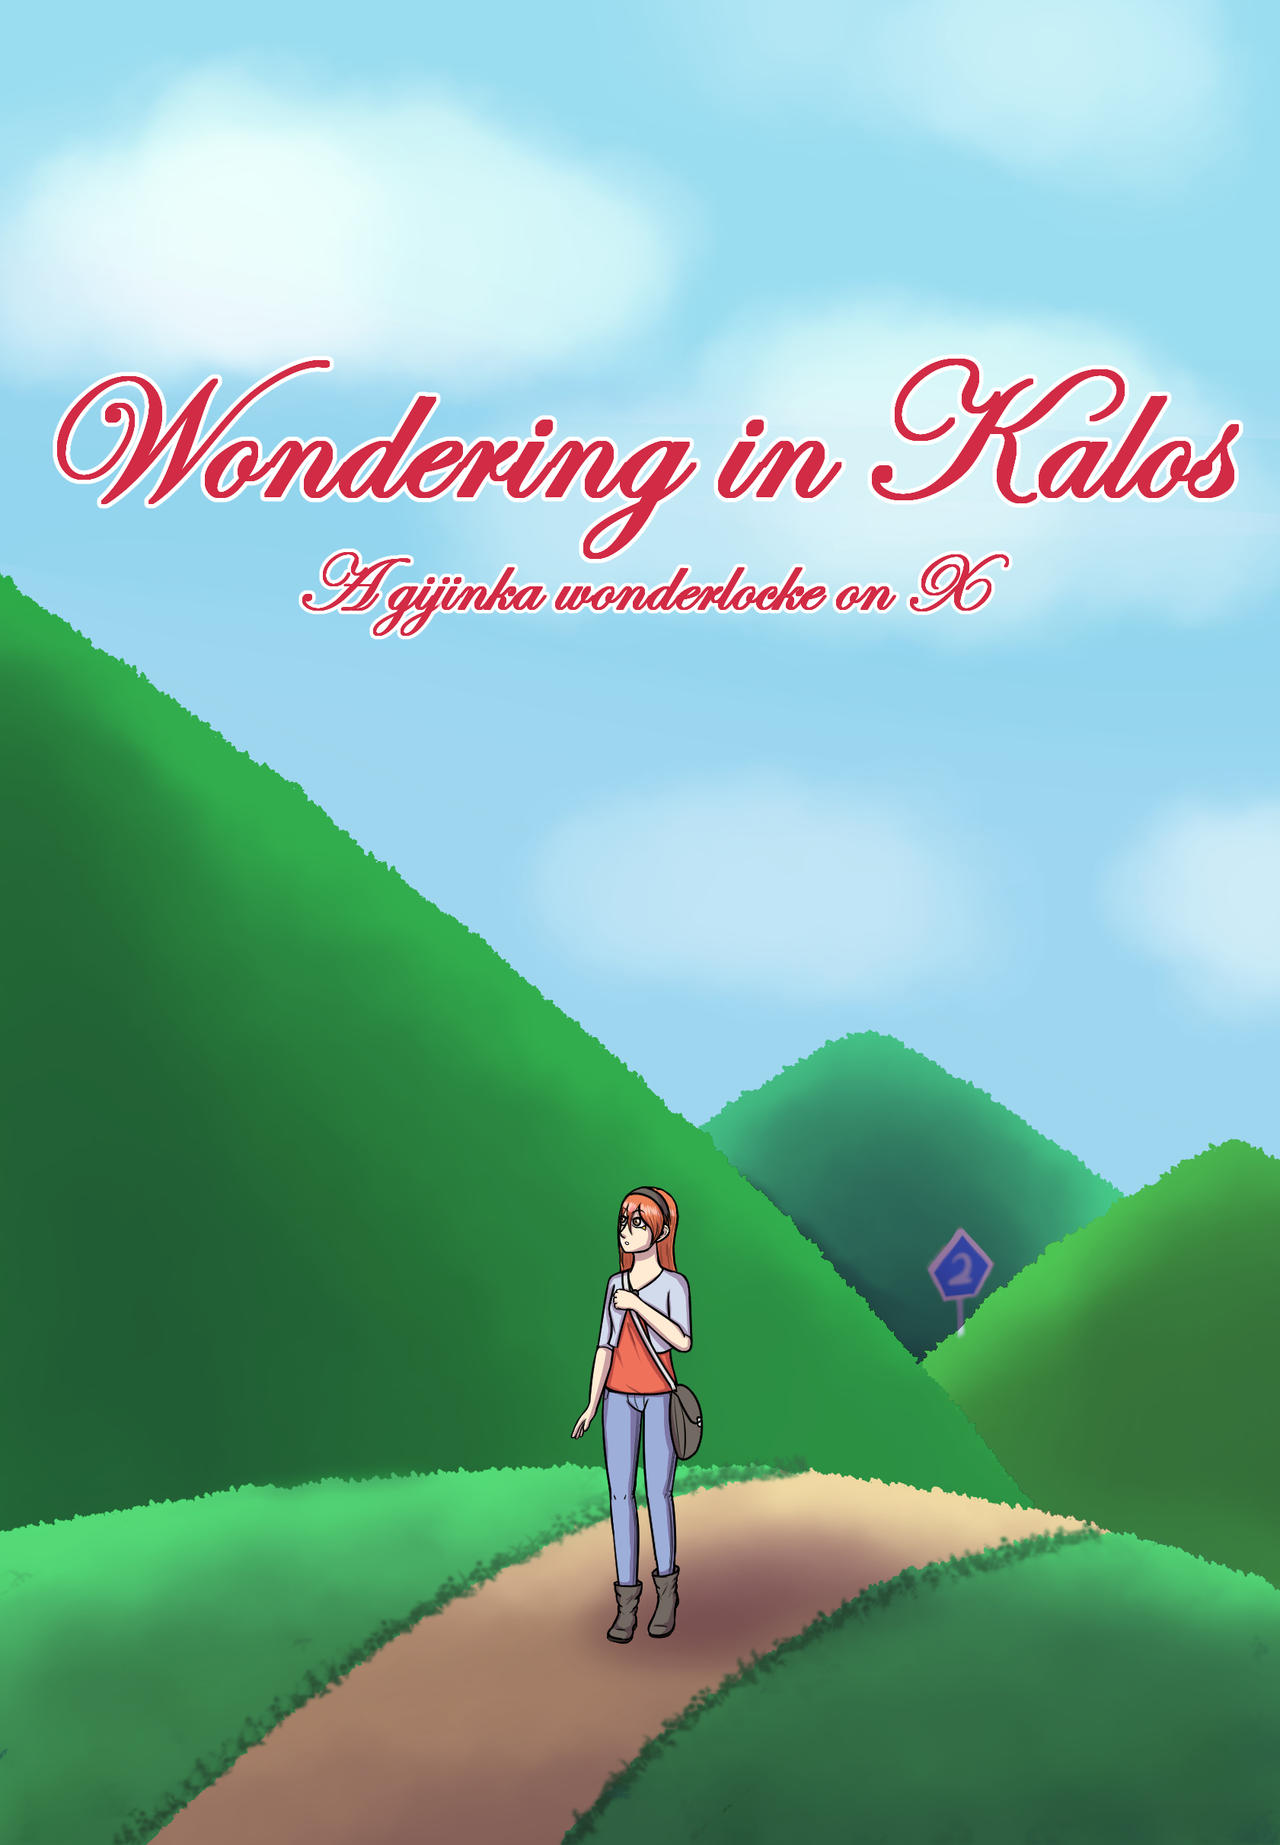 [X] Wondering in Kalos - Page 3 Wondering_in_kalos___a_gijinka_wonderlocke_x_by_ryikochan_ddwn2az-fullview.jpg?token=eyJ0eXAiOiJKV1QiLCJhbGciOiJIUzI1NiJ9.eyJzdWIiOiJ1cm46YXBwOjdlMGQxODg5ODIyNjQzNzNhNWYwZDQxNWVhMGQyNmUwIiwiaXNzIjoidXJuOmFwcDo3ZTBkMTg4OTgyMjY0MzczYTVmMGQ0MTVlYTBkMjZlMCIsIm9iaiI6W1t7ImhlaWdodCI6Ijw9MTg0NSIsInBhdGgiOiJcL2ZcL2IzMDFkYjA1LWI3ZjItNDBkZC1hOGM0LWIwN2Q1YTVjMWJjNFwvZGR3bjJhei1hNjJkMDZhZi04MzI1LTQxNmMtYTNlMS0wMmE5YjU5OWU0NTMuanBnIiwid2lkdGgiOiI8PTEyODAifV1dLCJhdWQiOlsidXJuOnNlcnZpY2U6aW1hZ2Uub3BlcmF0aW9ucyJdfQ